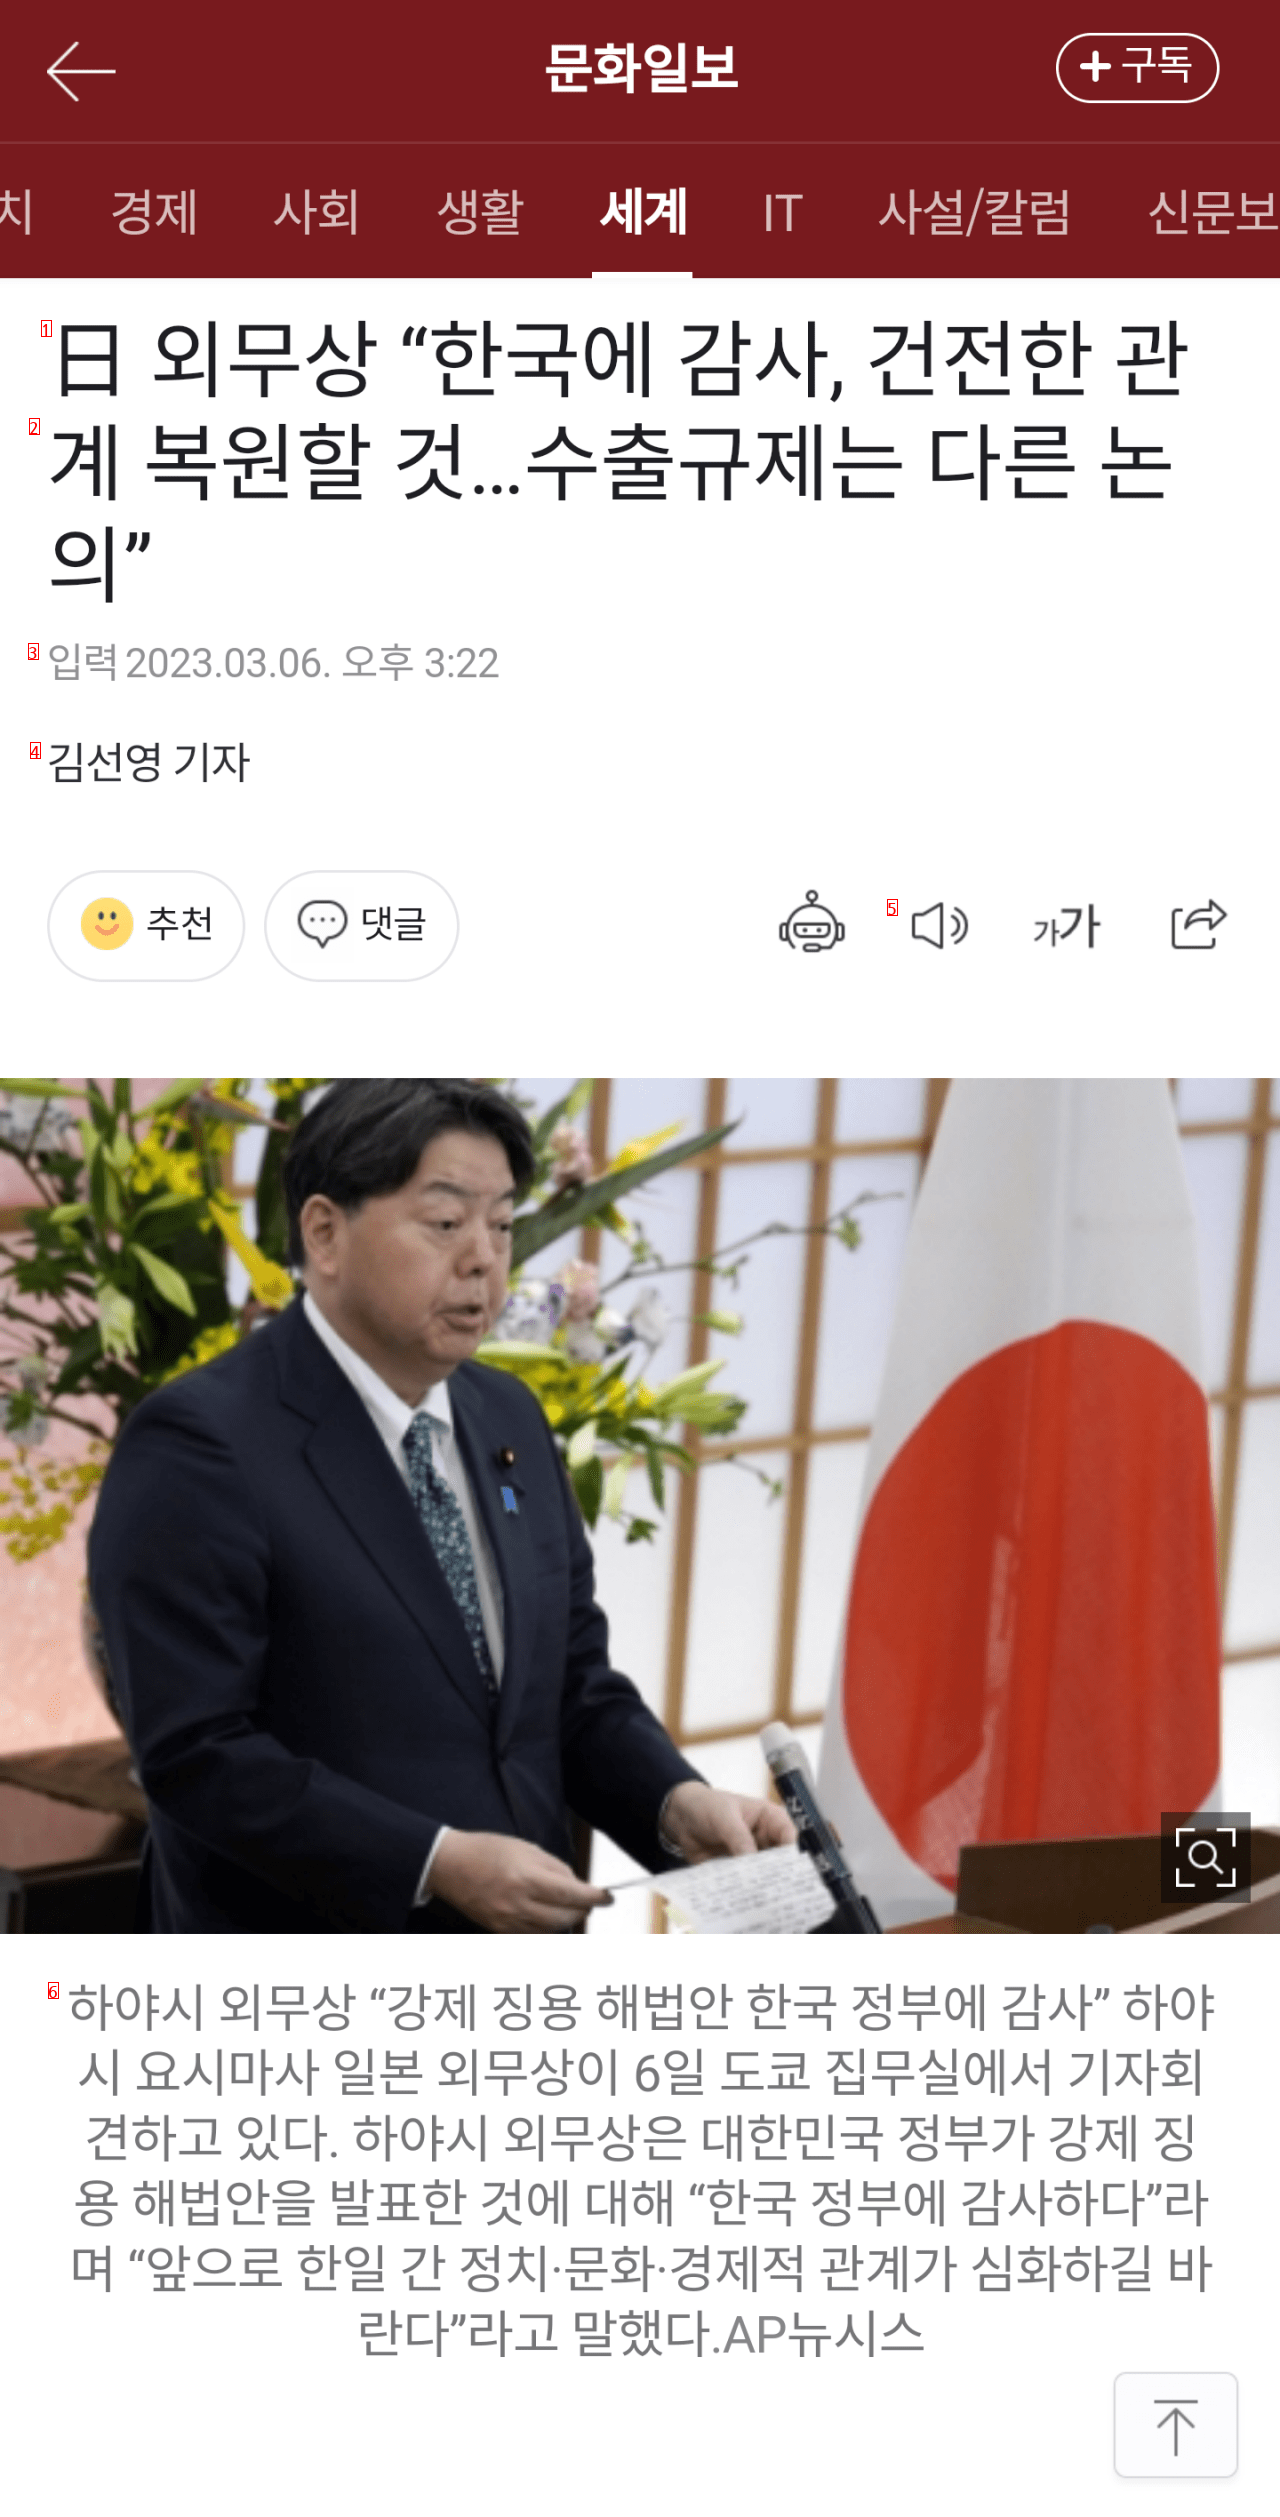 日本外務大臣「韓国に感謝、健全な関係を修復すること…」 しかし、輸出規制は別問題」